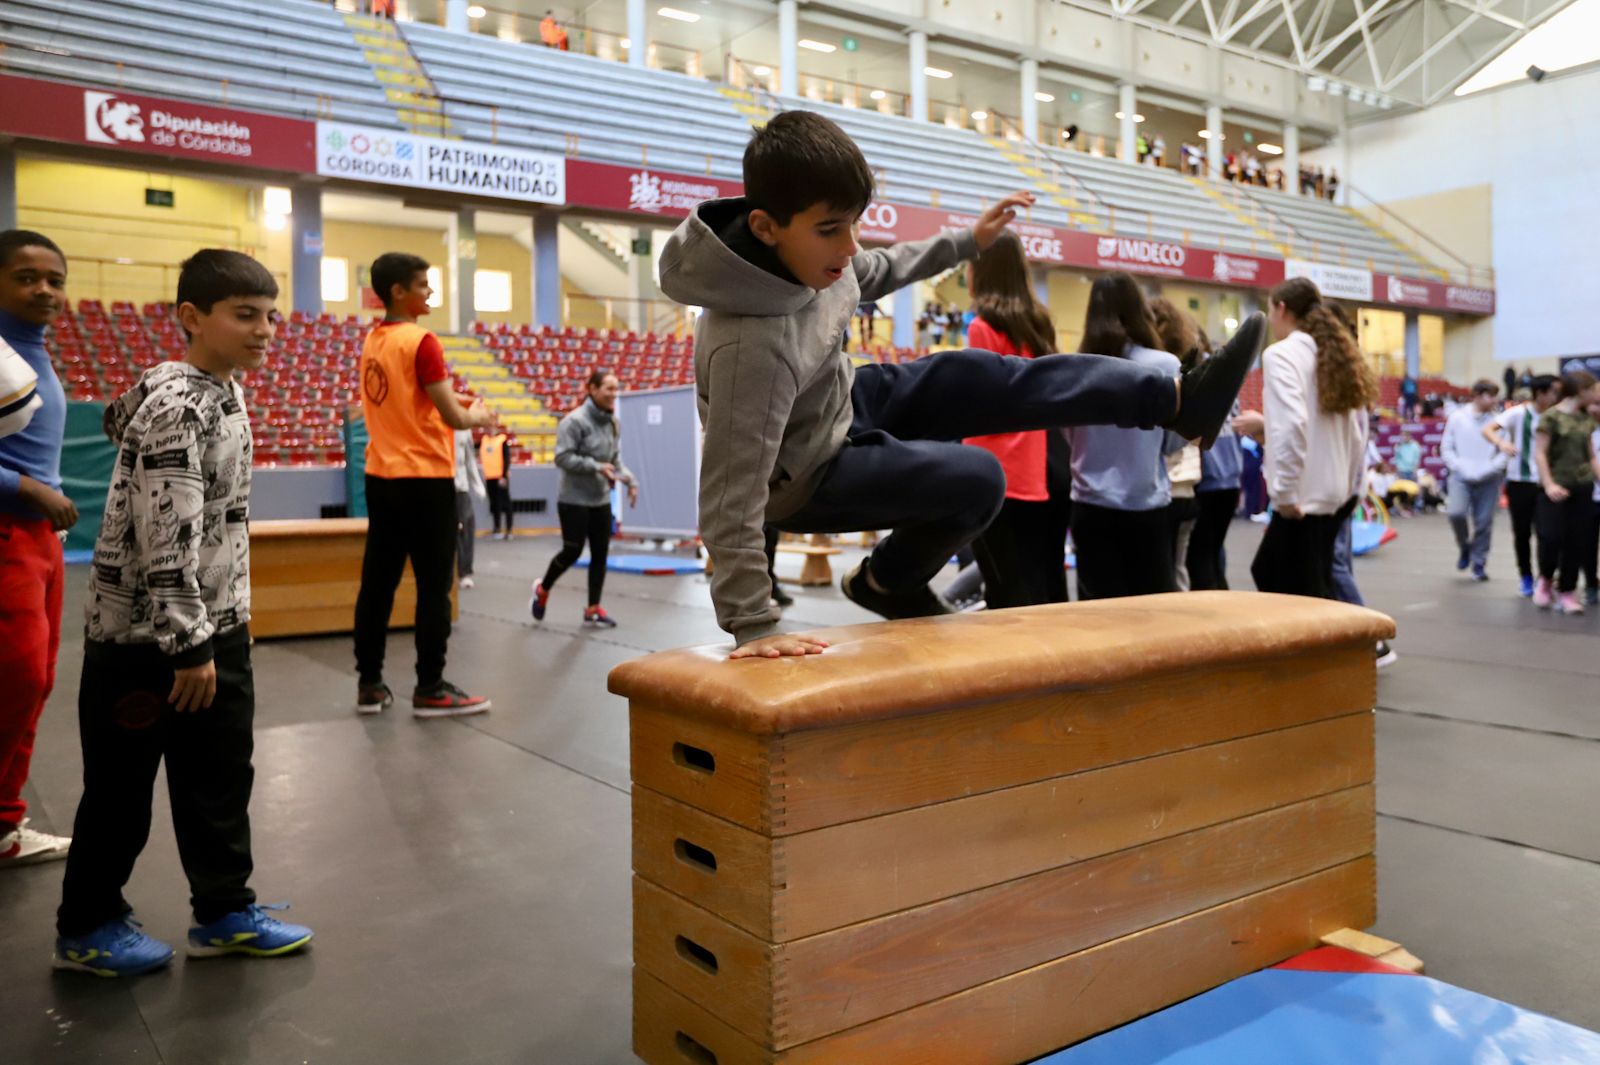 El palacio municipal de deportes Vista Alegre acoge una nueva edición de la Gimnastrada